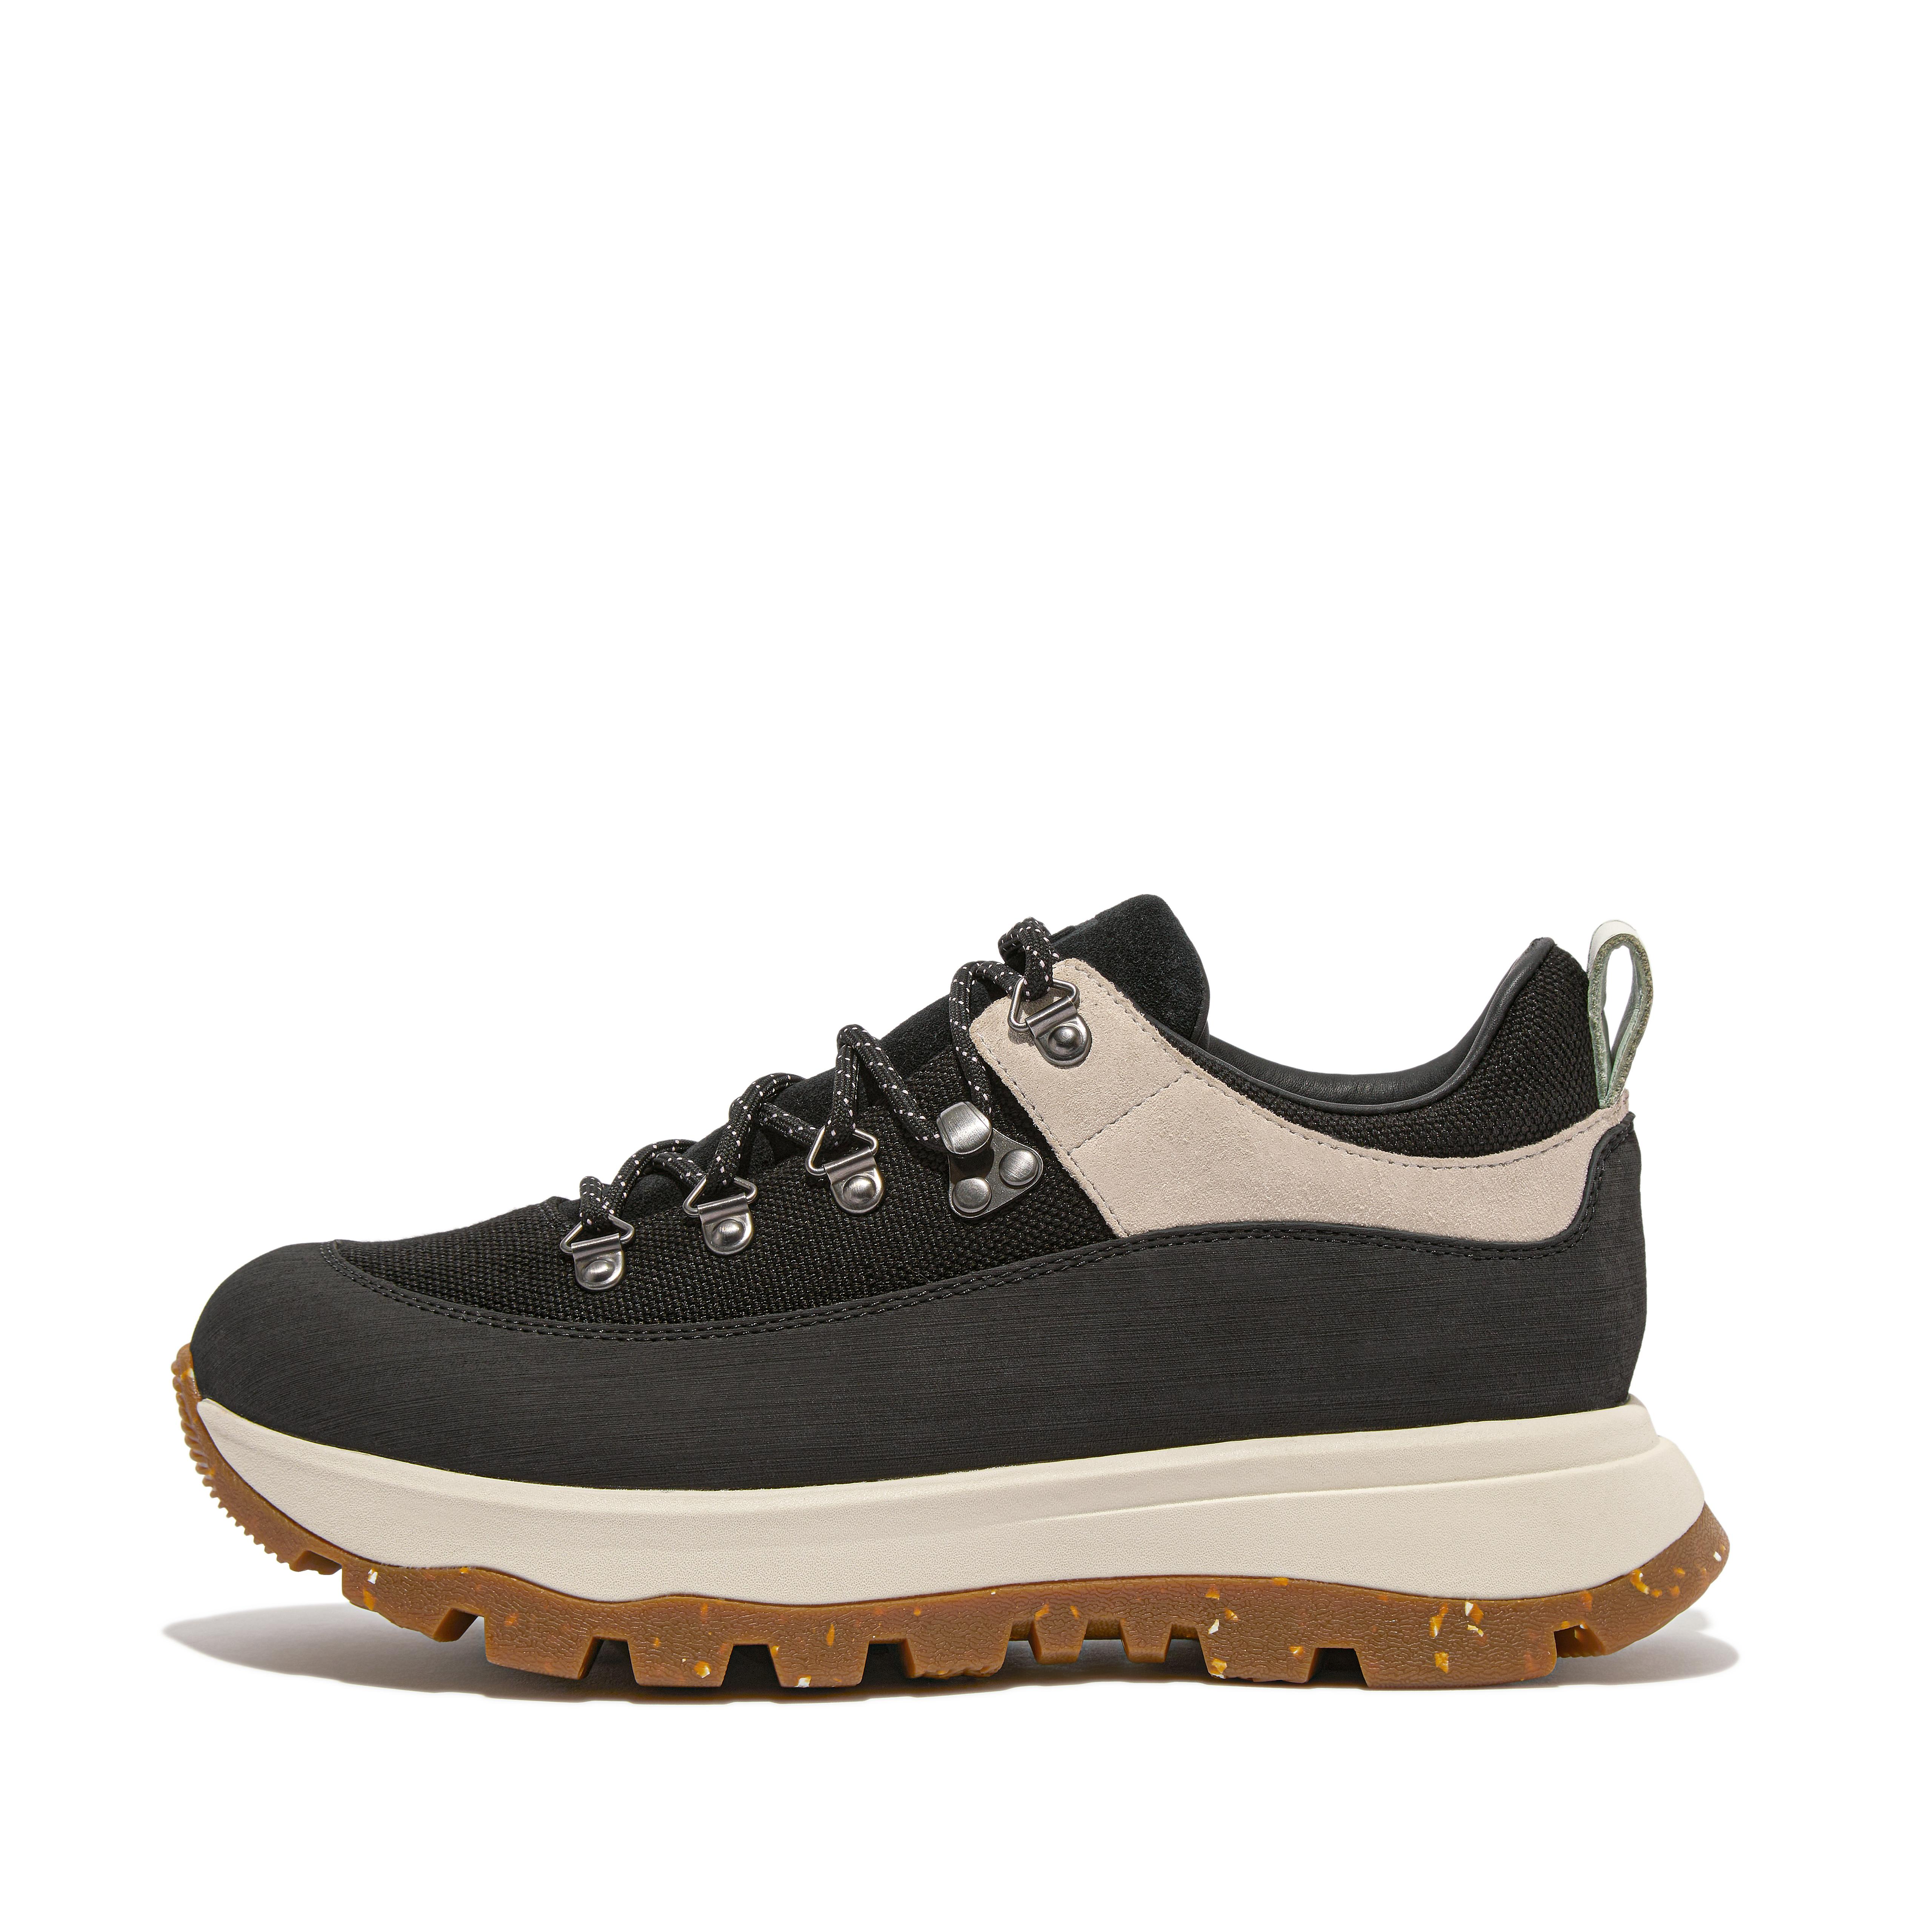 Fitflop Waterproof Canvas/Suede Walking Sneakers,Black